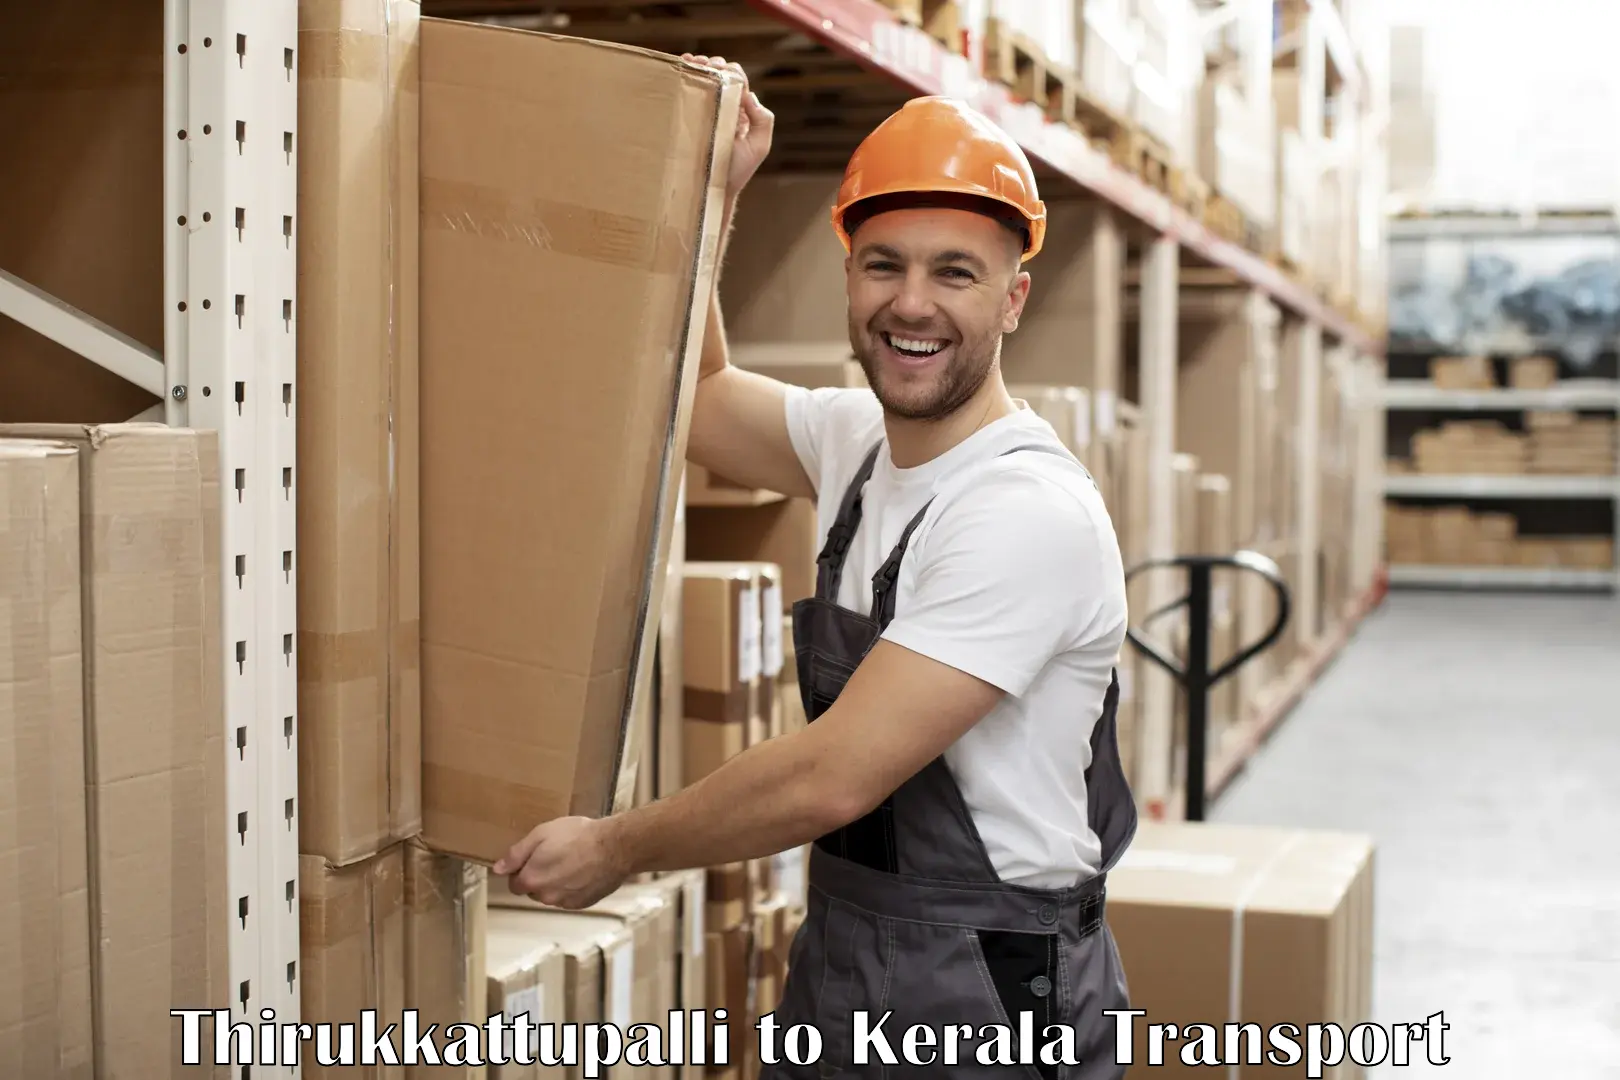 Intercity transport Thirukkattupalli to IIIT Kottayam